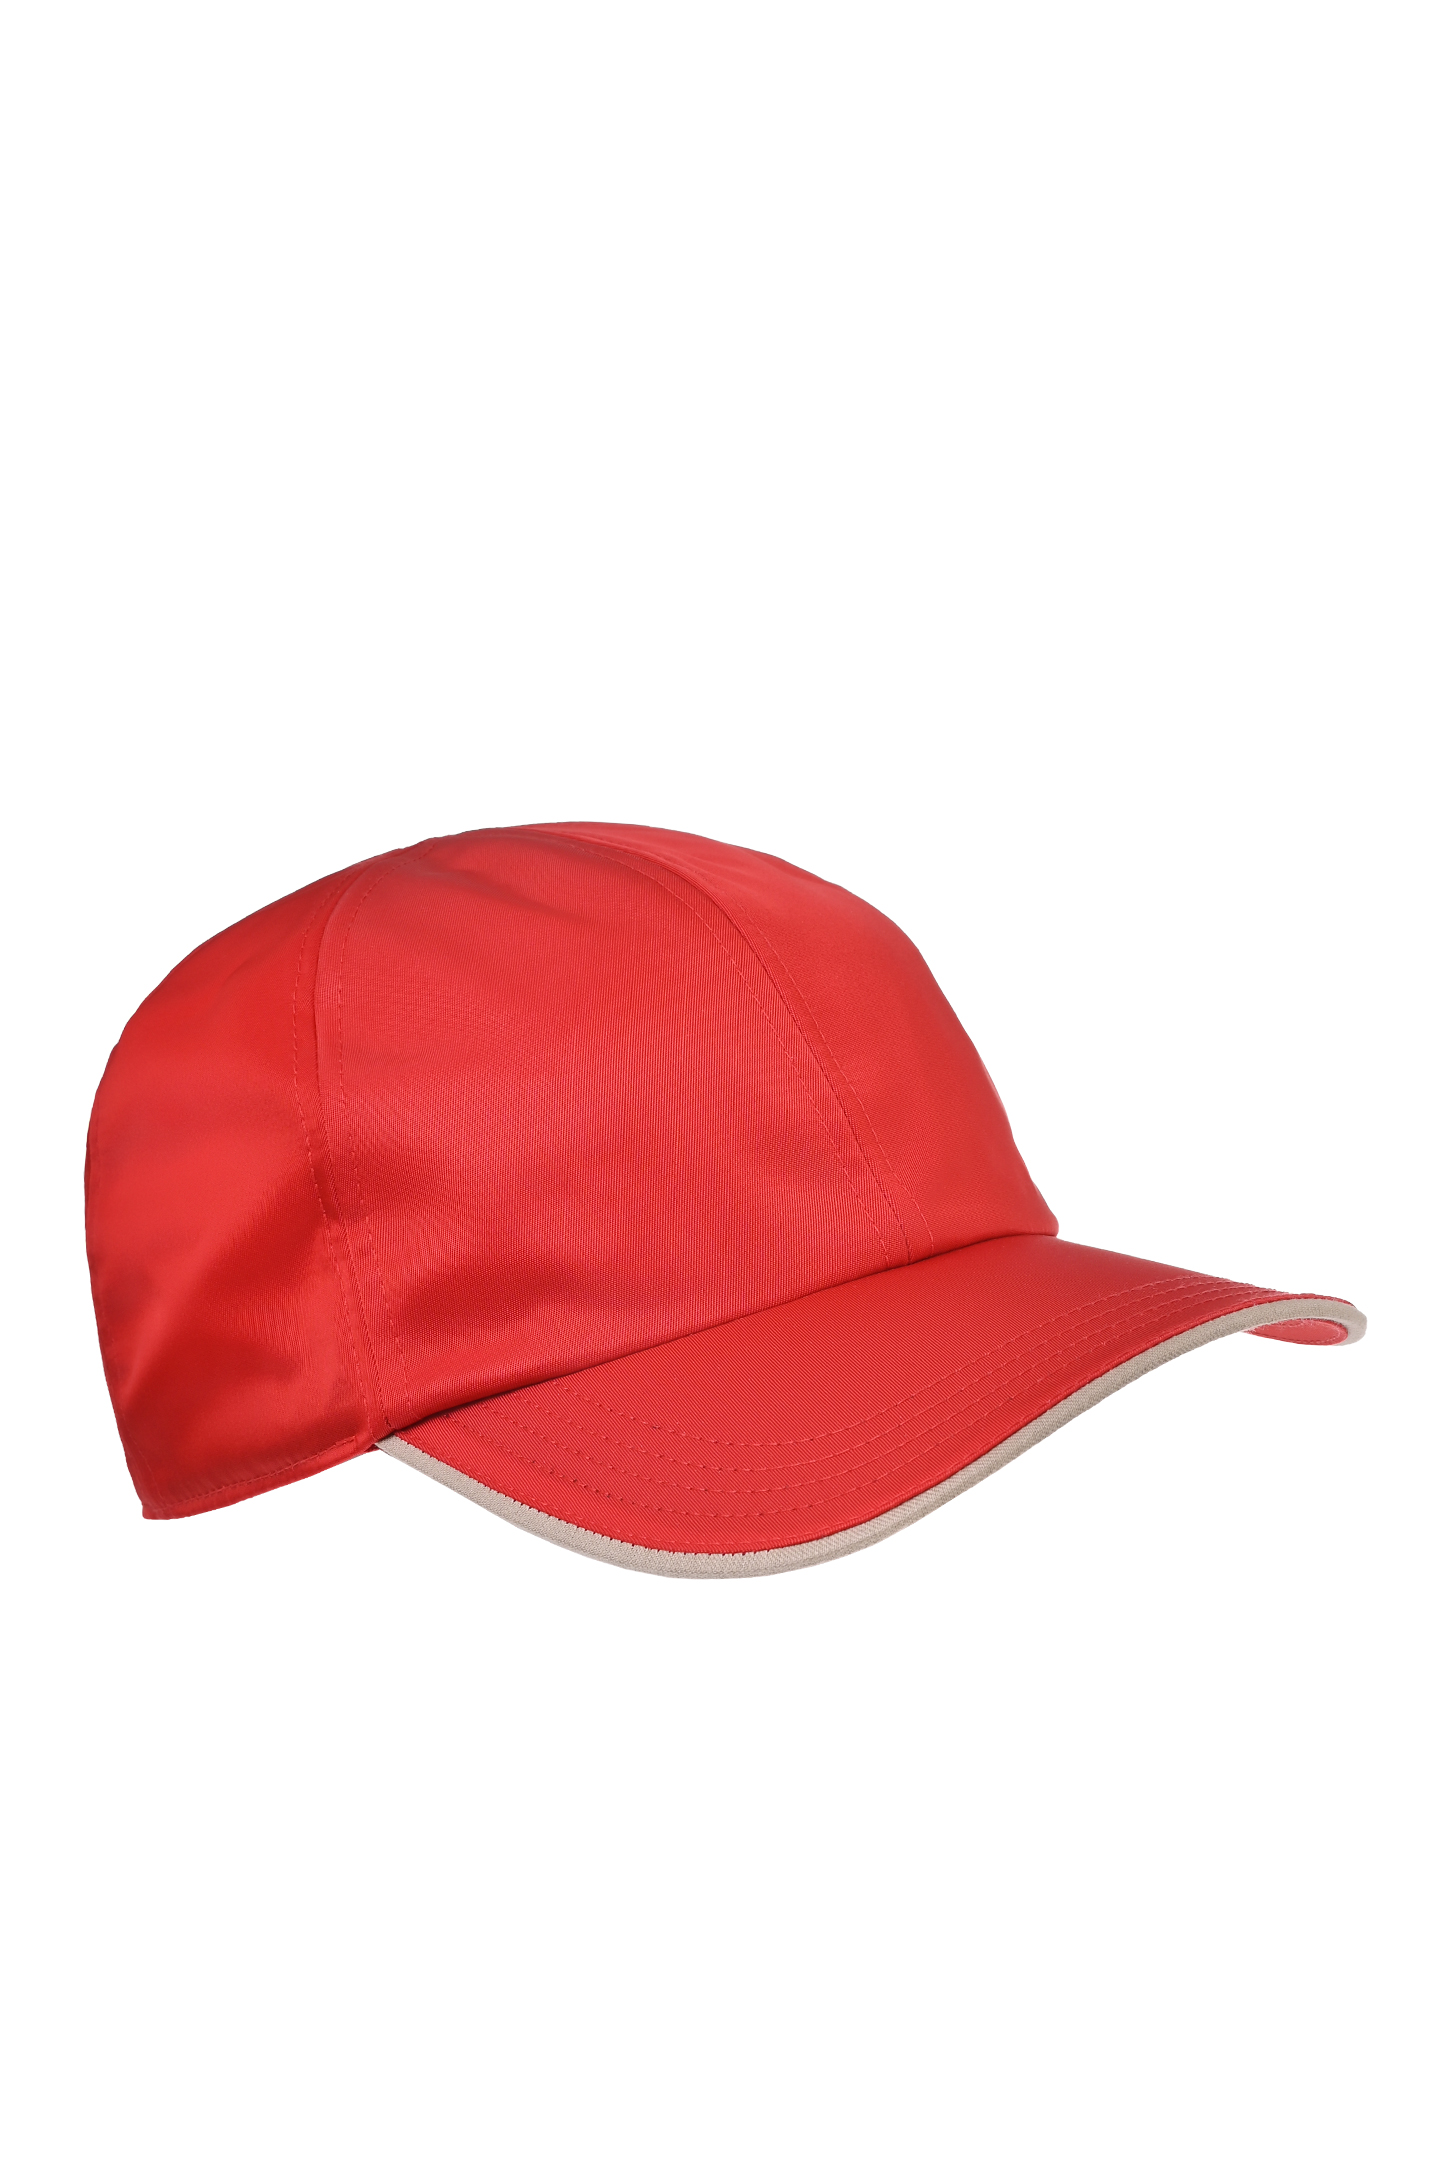 Бейсболка с логотипом KITON UCAPP57K0716D0, цвет: Красный, Мужской